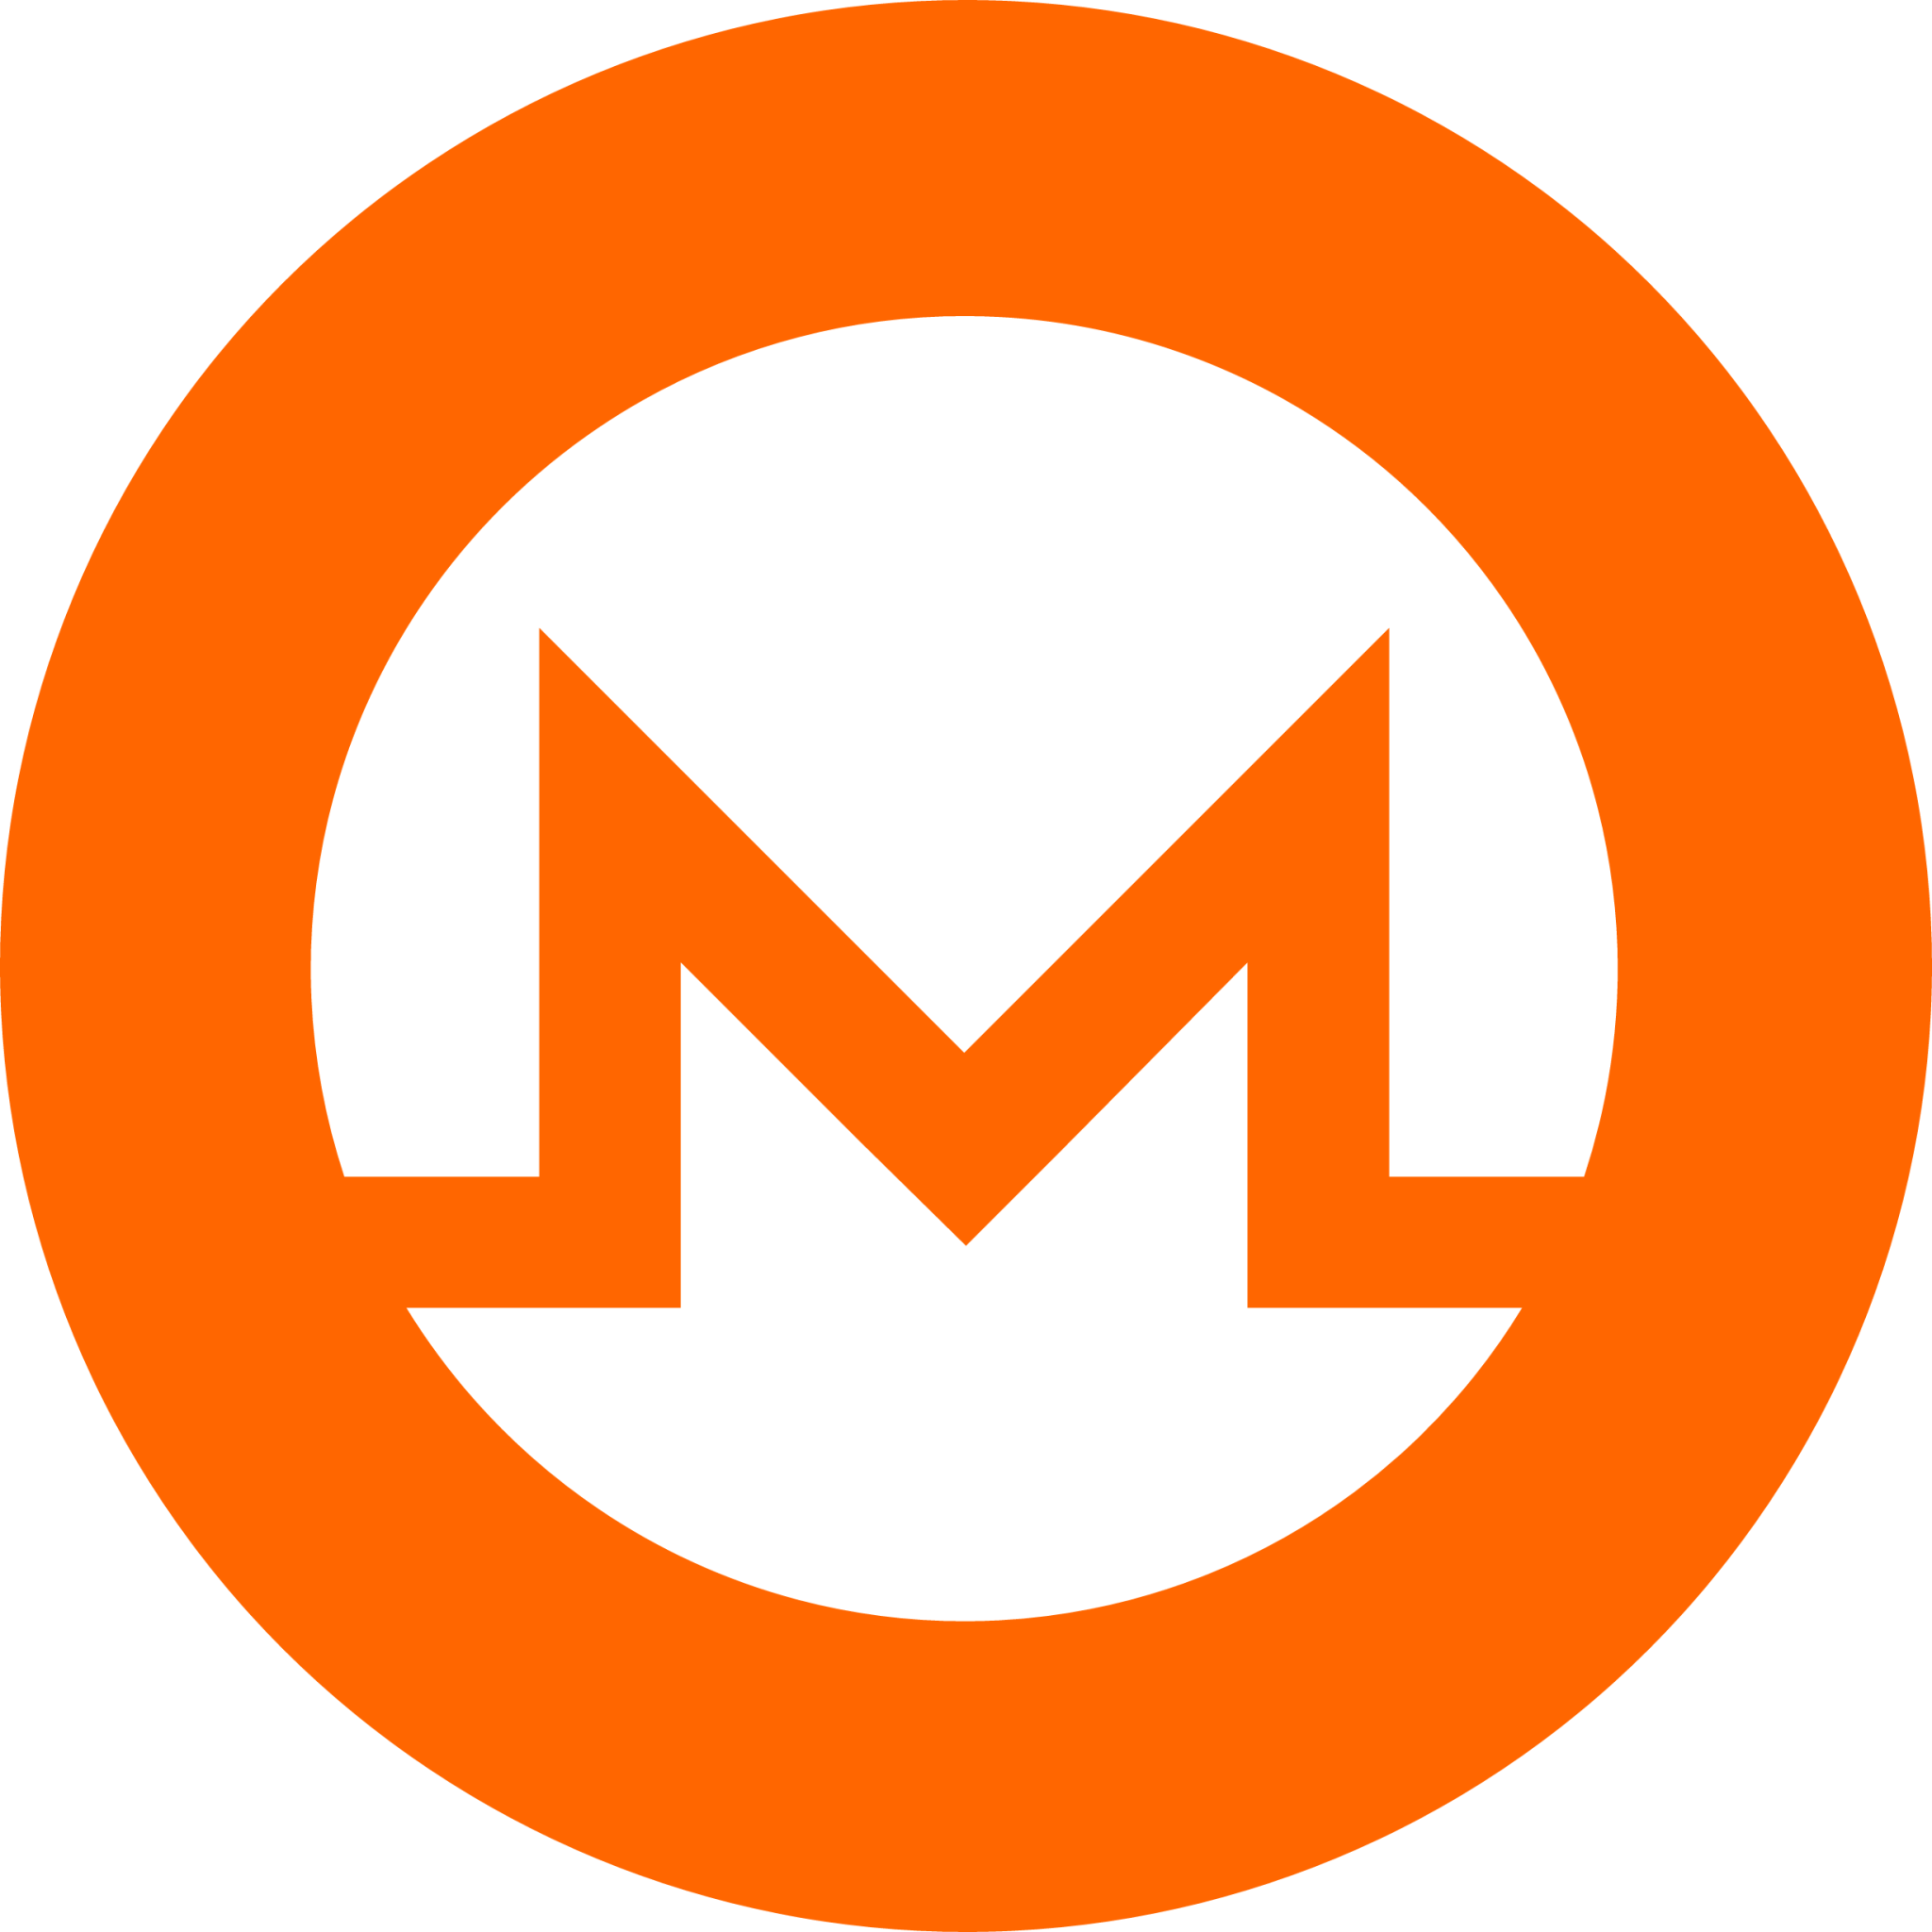 Monero Cryptocurrency icon